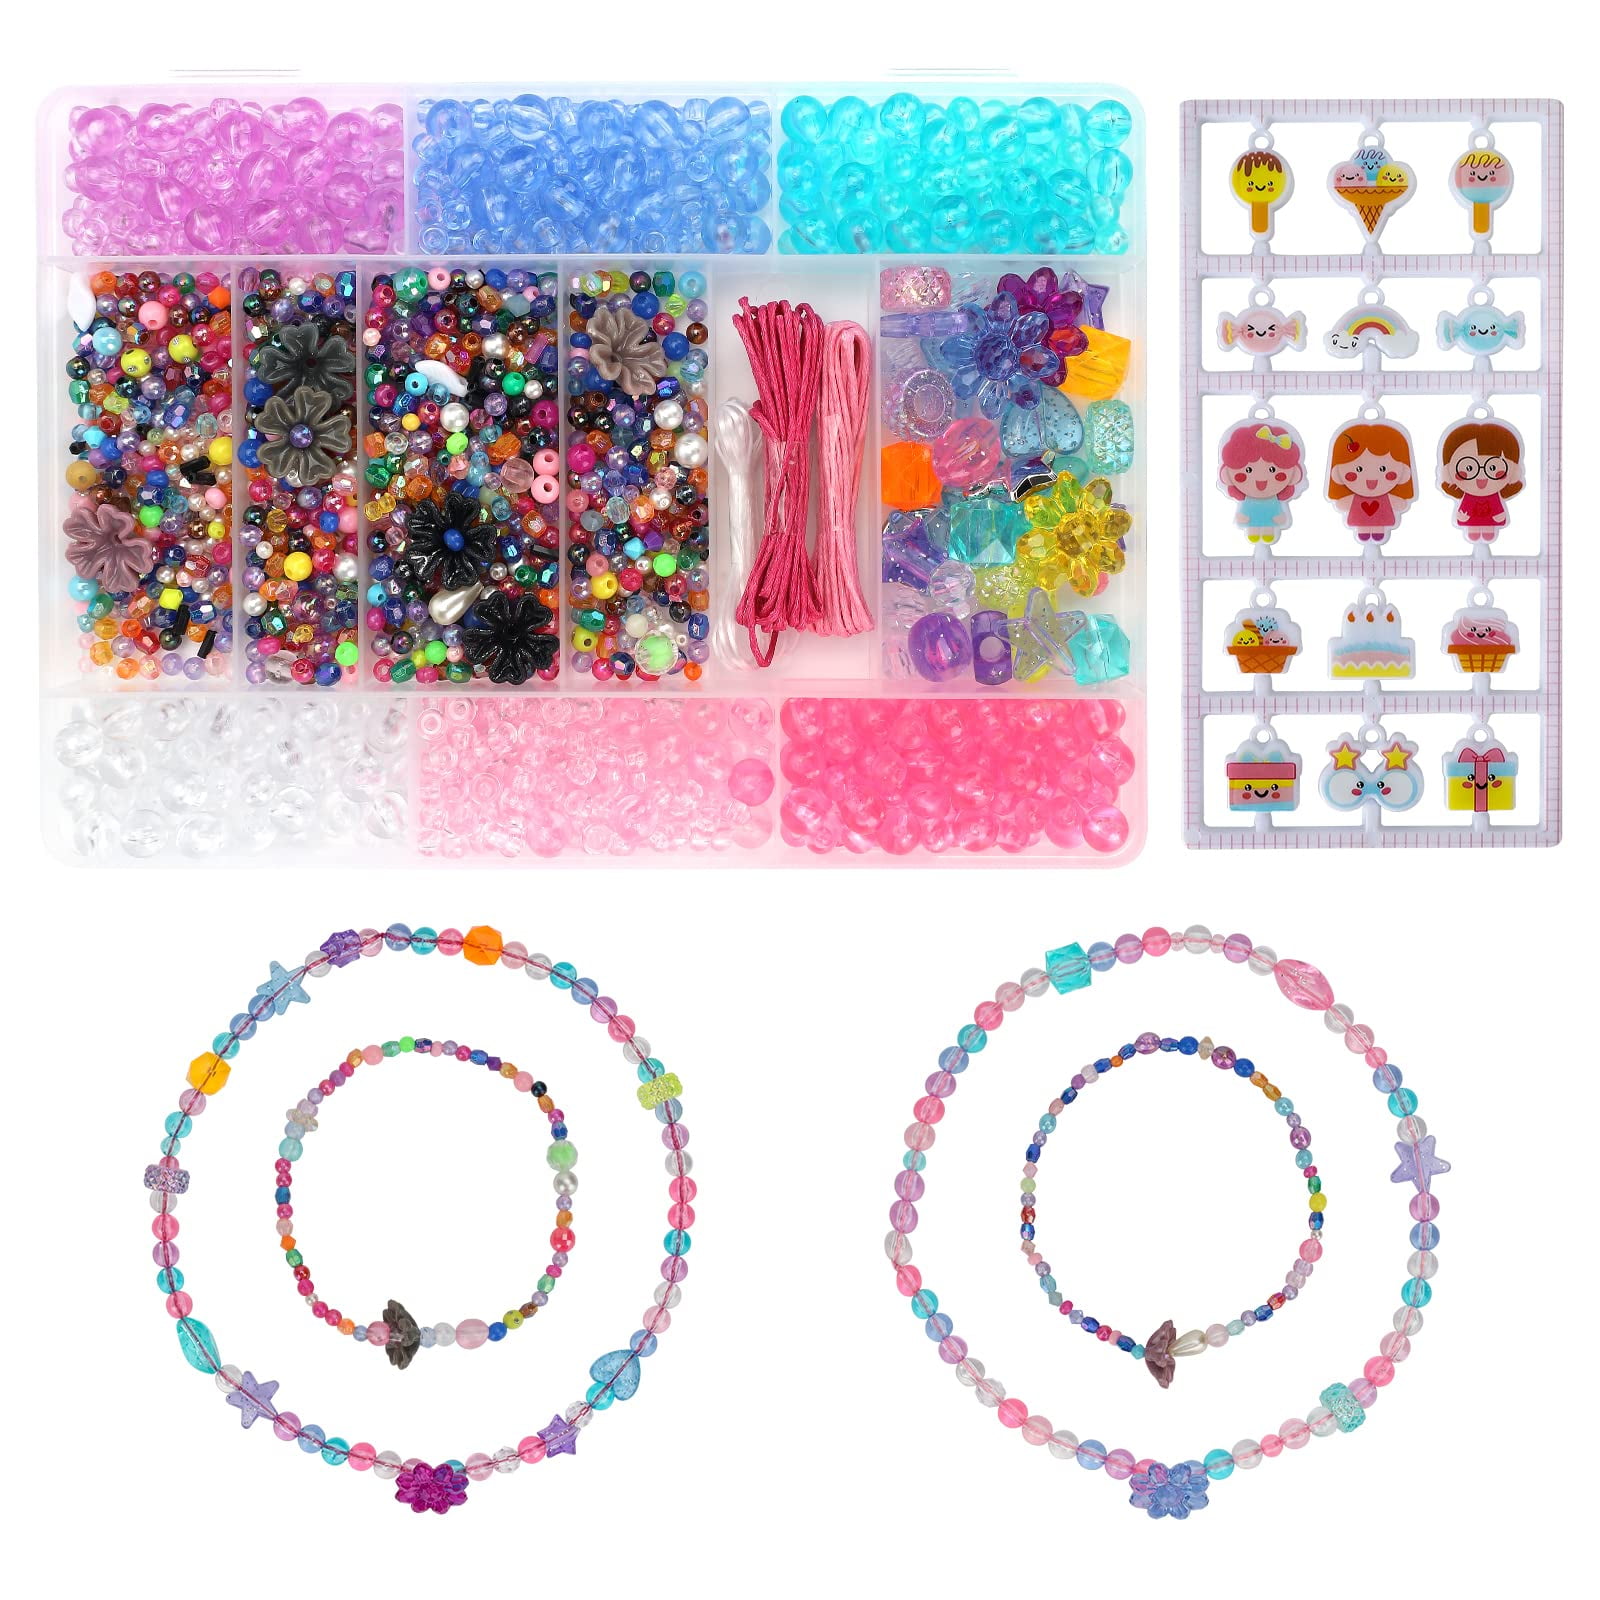 PATPAT Bracelet Making Kit for Girls - Beading & Jewelry Making Kit DIY Kits  for Girls Ages 4-6 Year Old Girls (Bead Random color) - Bracelet Making Kit  for Girls - Beading